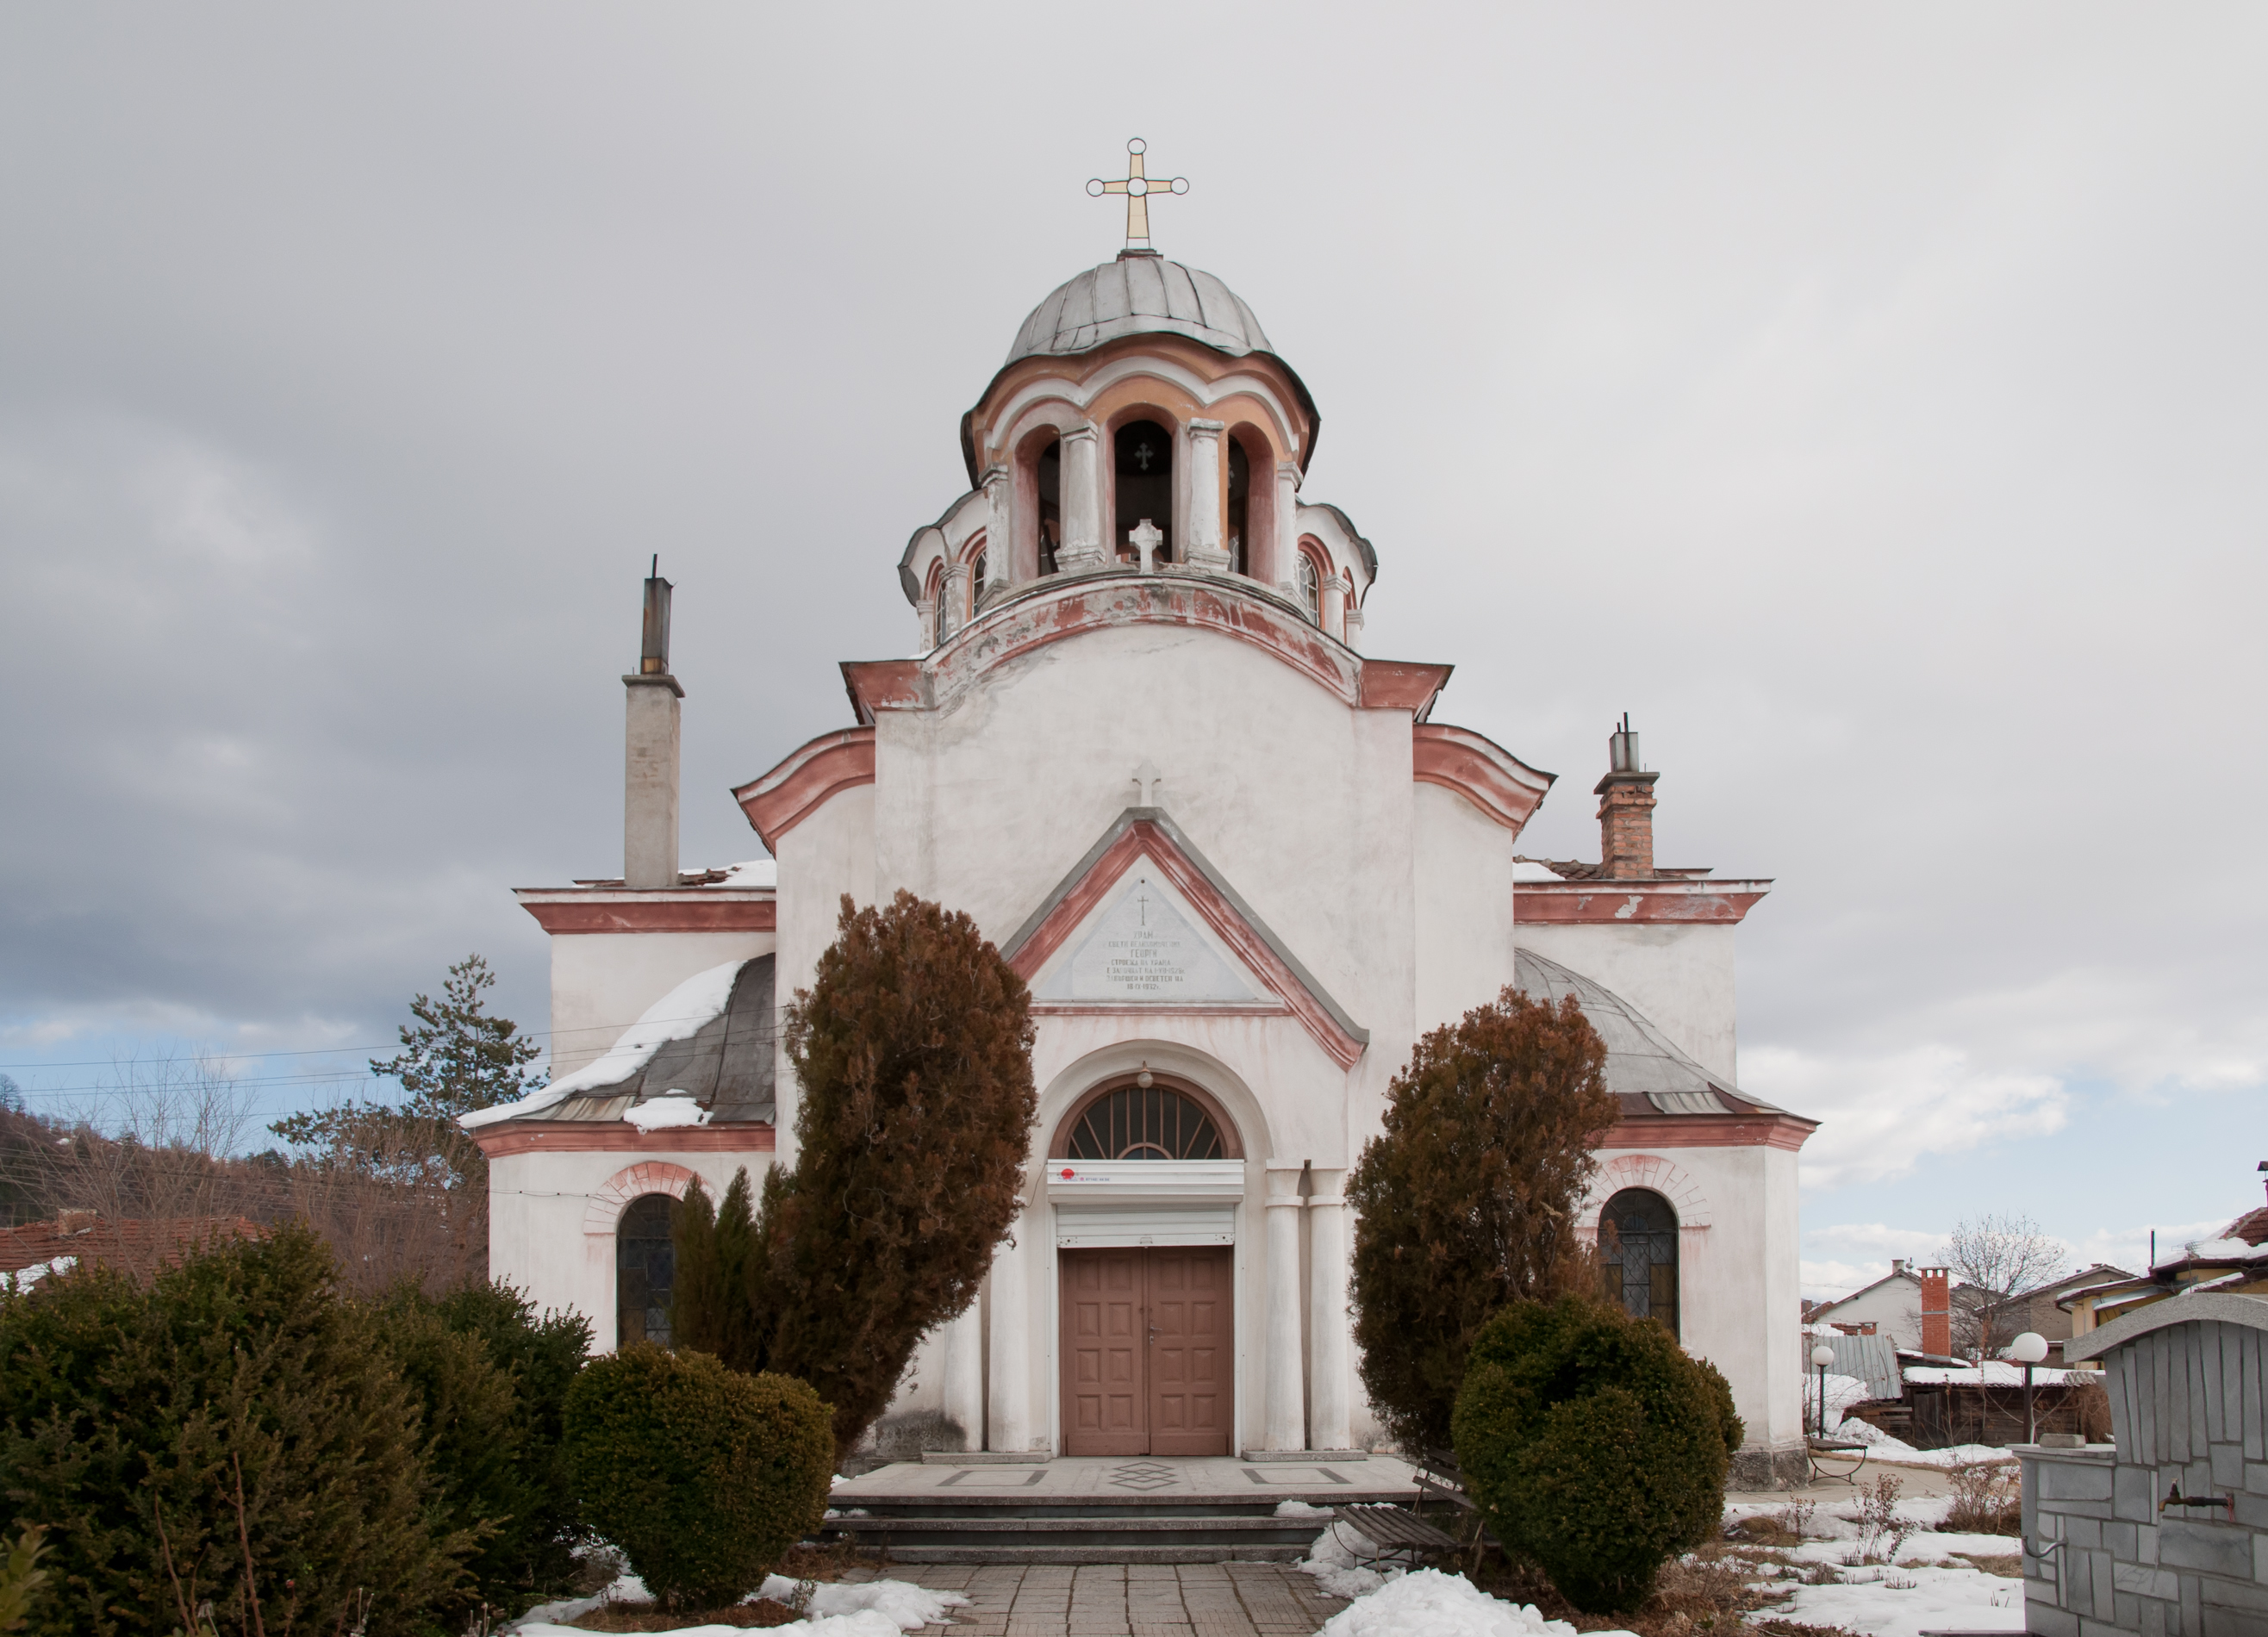 St George Church - Kostenets